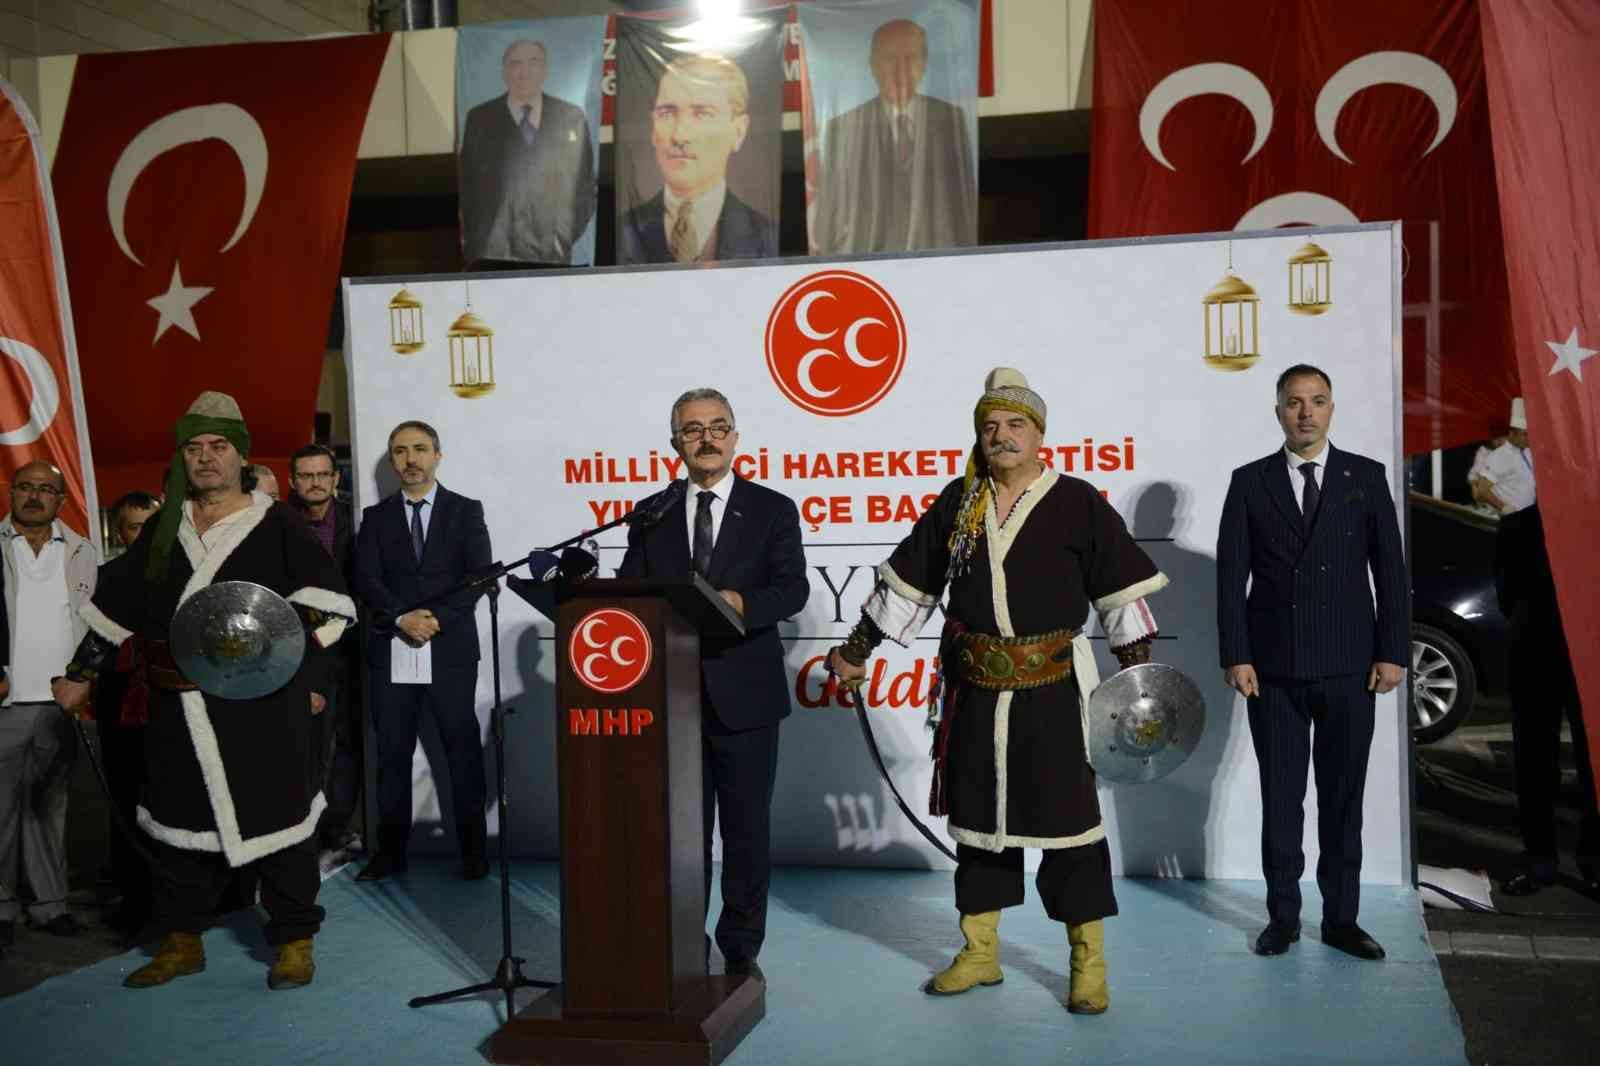 Mhp Genel Sekreteri Büyükataman: “Zillet Cephesi Türkiyenin Birlikte Yaşama İradesini Kırarak Ülkeyi Uçuruma Çekecektir”